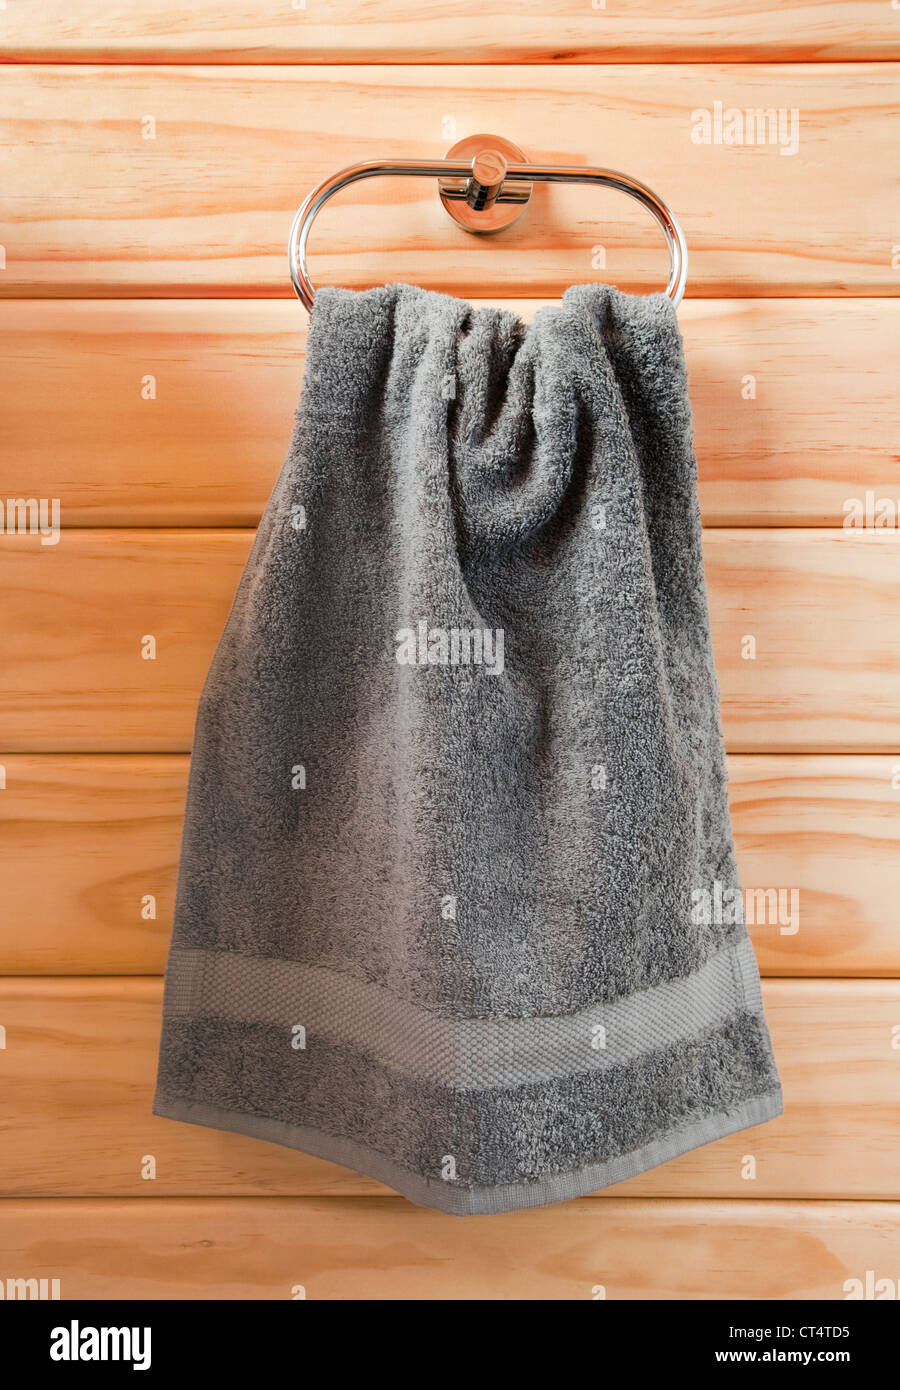 Serviette gris accroché sur l'anneau de serviette chrome, contre un mur de bois. Banque D'Images